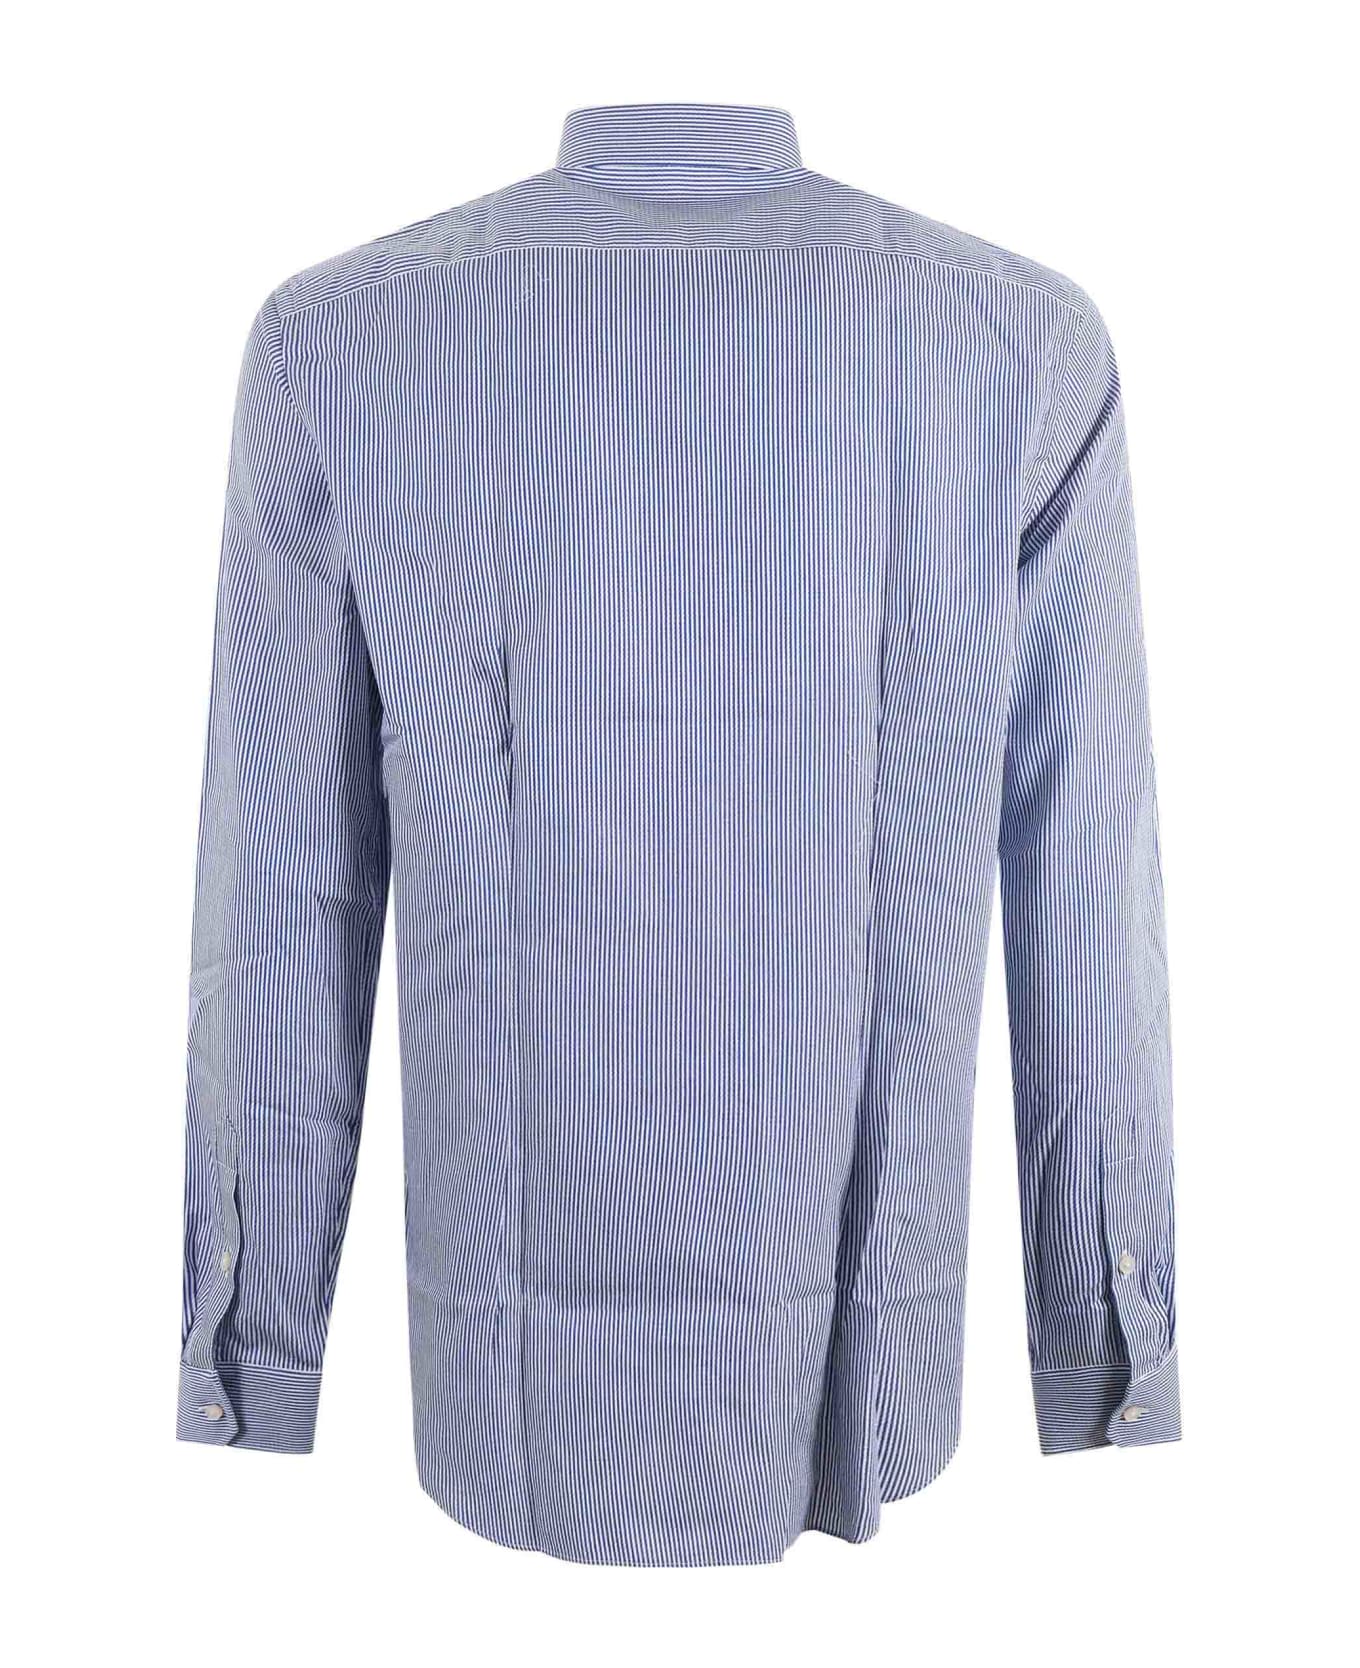 Xacus Shirt - Bianco/blu